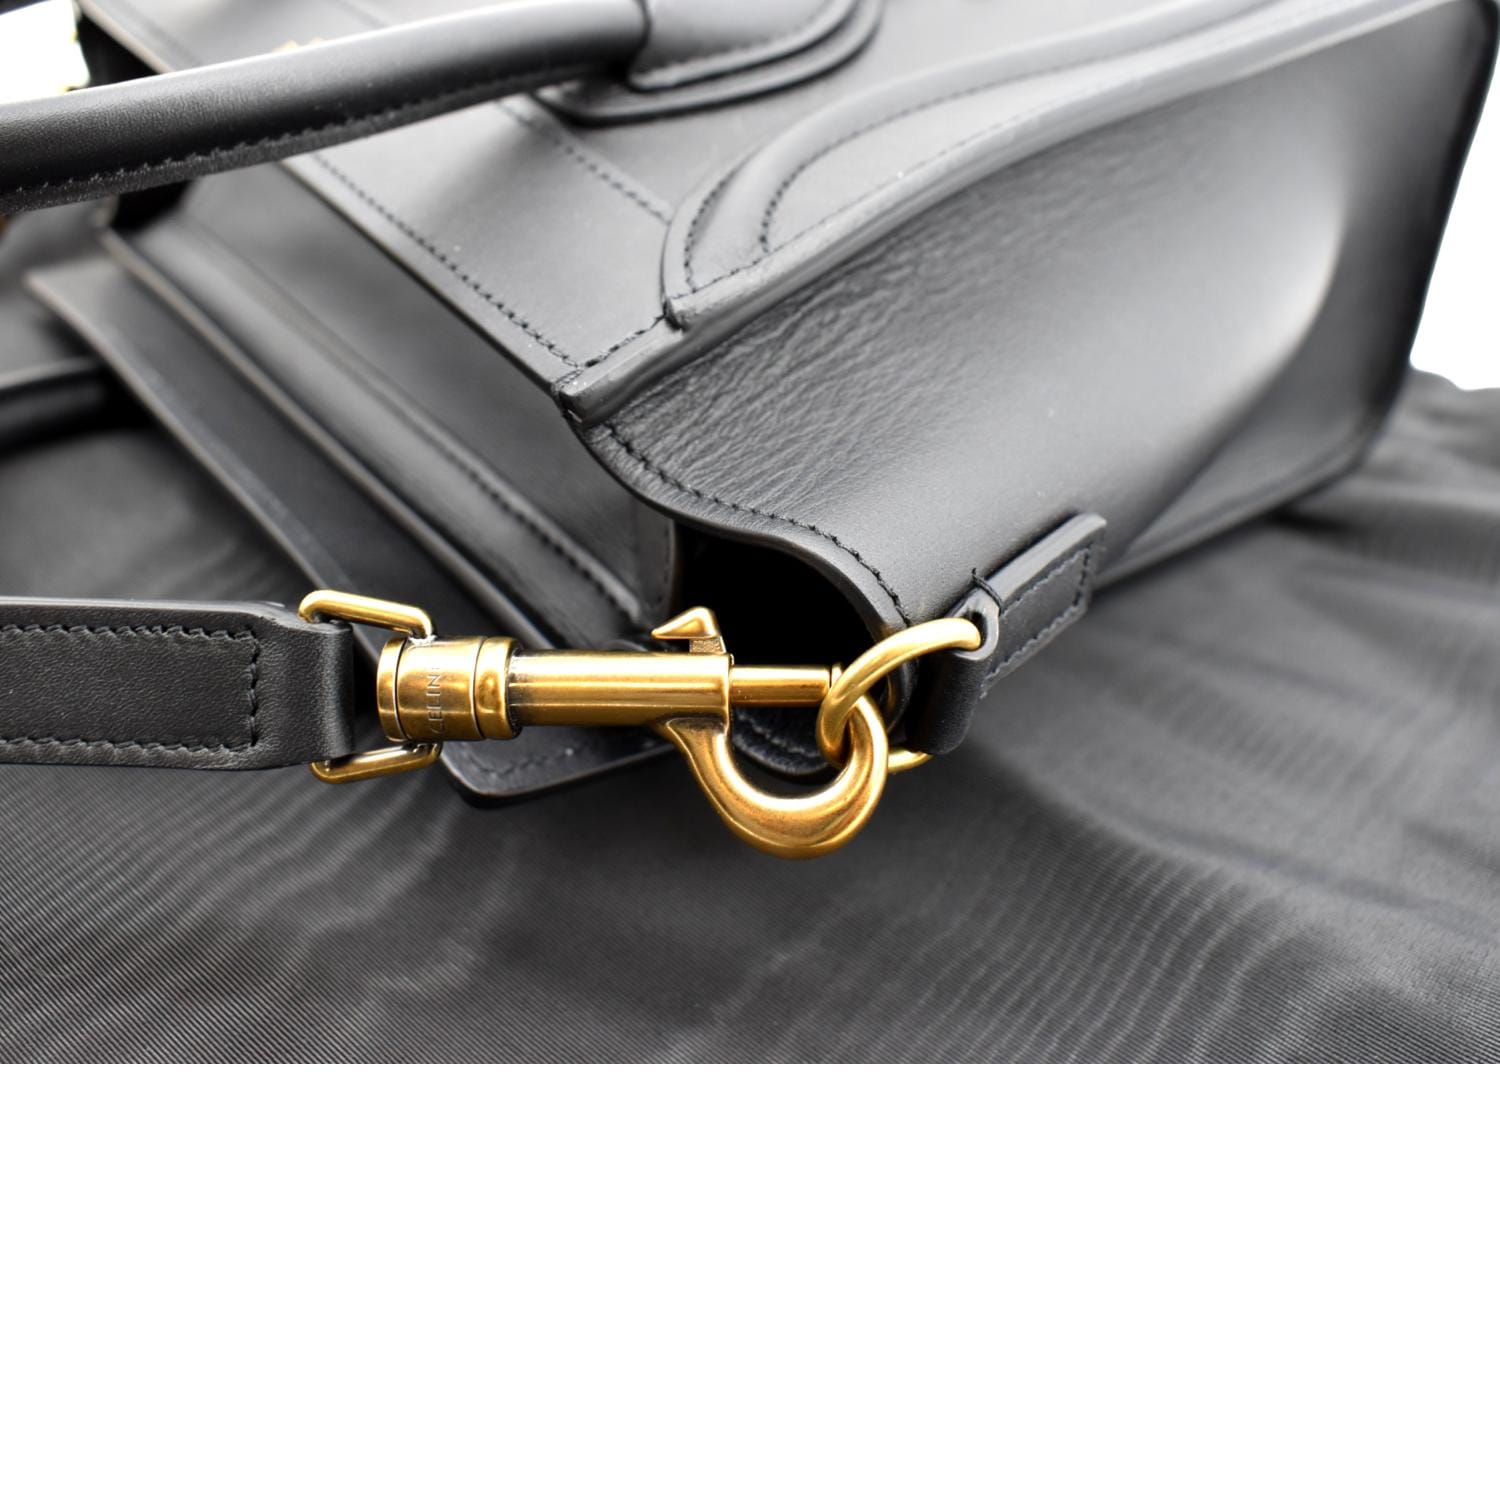 CELINE Black Leather Nano Luggage Shoulder Bag